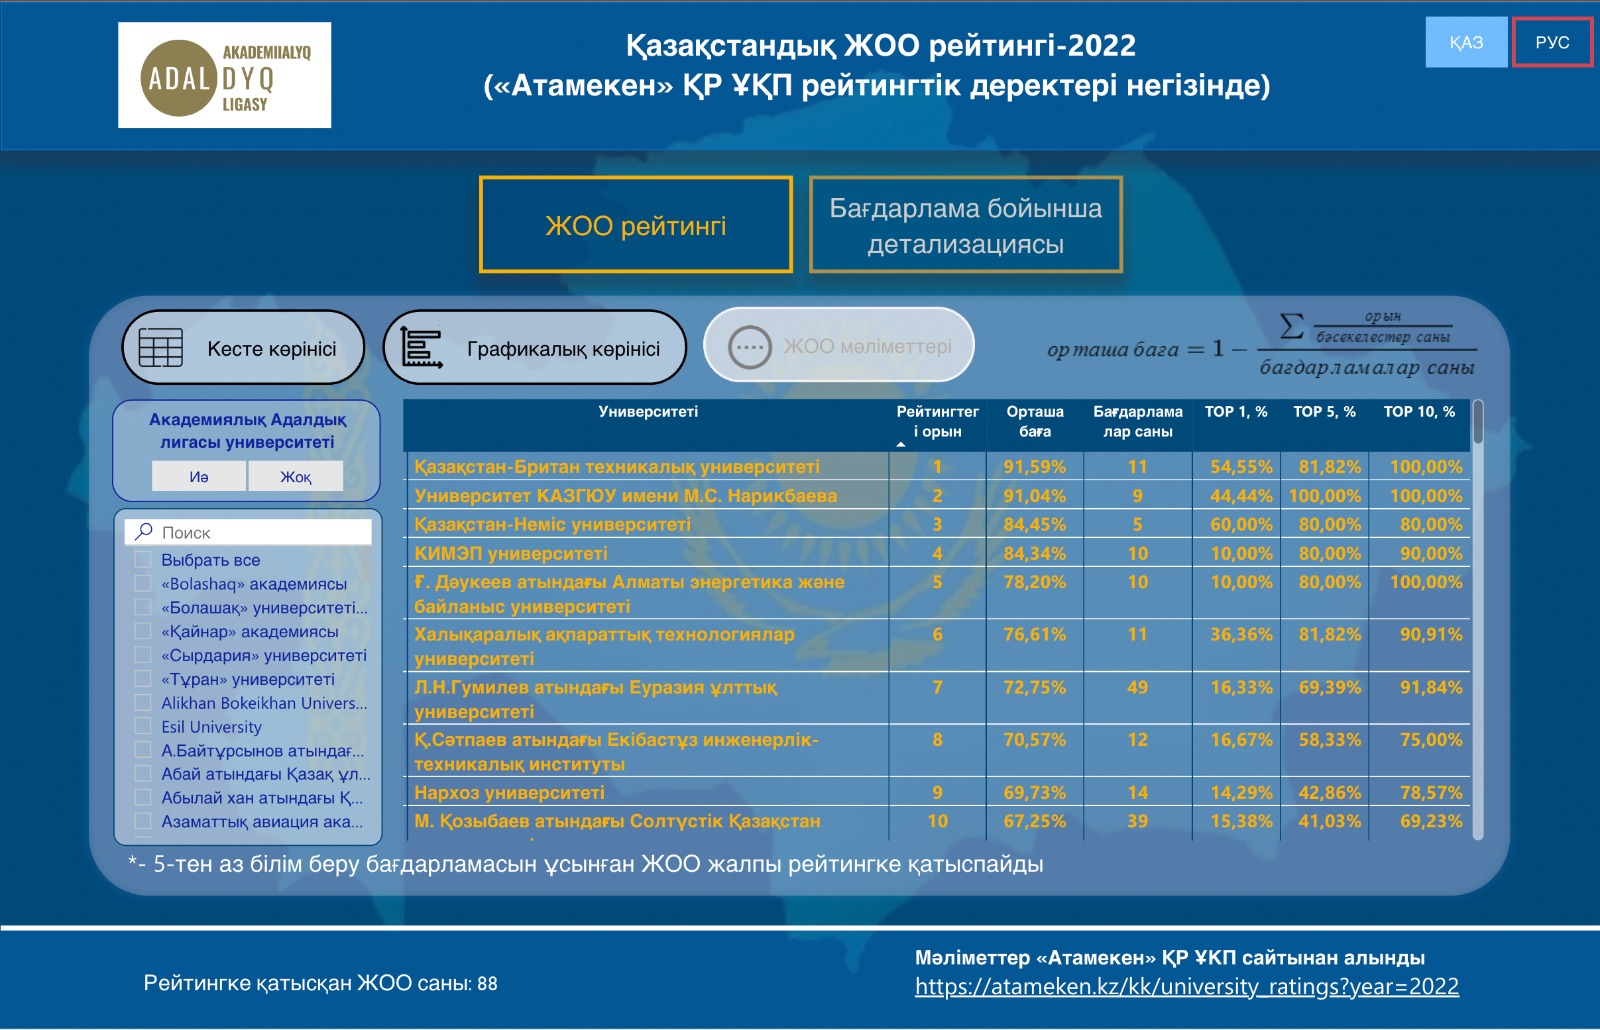 Академиялық адалдық лигасы қазақстандық жоғары оқу орындарының рейтинг нәтижелерін ұсынды